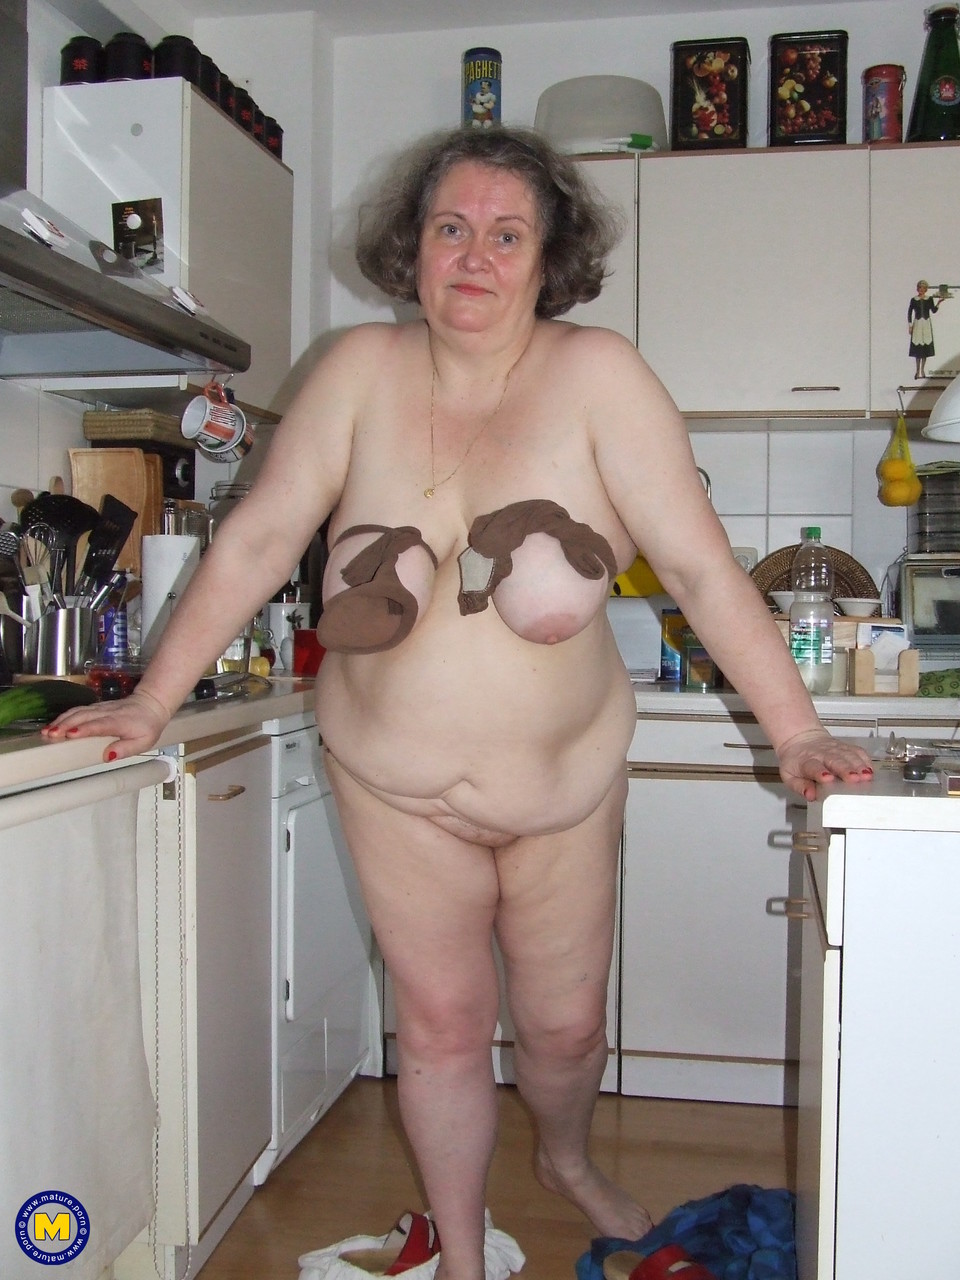 Fat mature housewife Birgid masturbates with a cucumber in the kitchen porno fotky #423883243 | Mature NL Pics, Birgid, Granny, mobilní porno